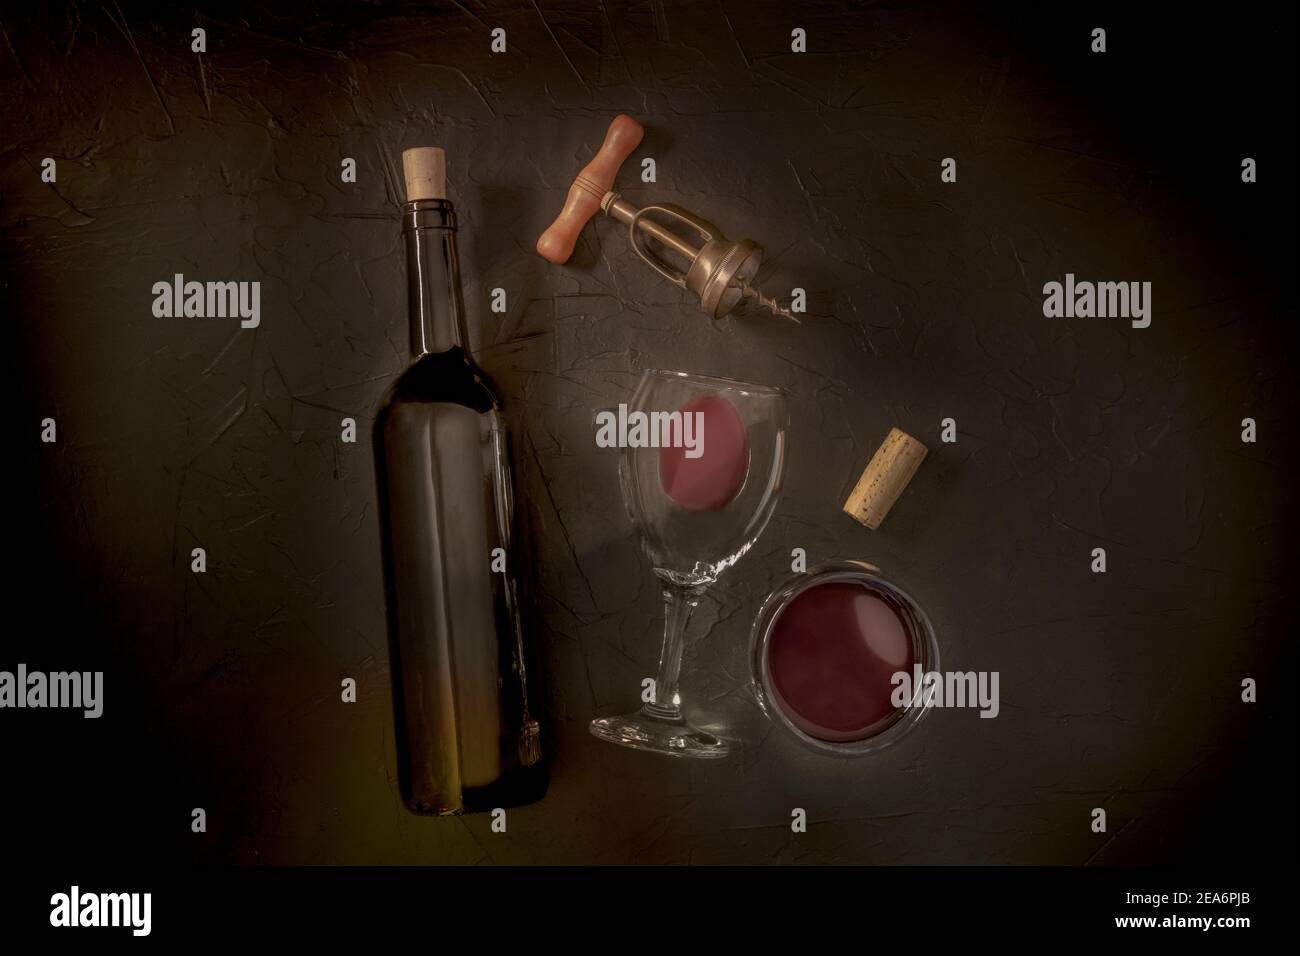 Degustazione di vini, top shot su sfondo nero, con un sughero, un cavatappi vintage, una bottiglia e due bicchieri, immagine tonica Foto Stock